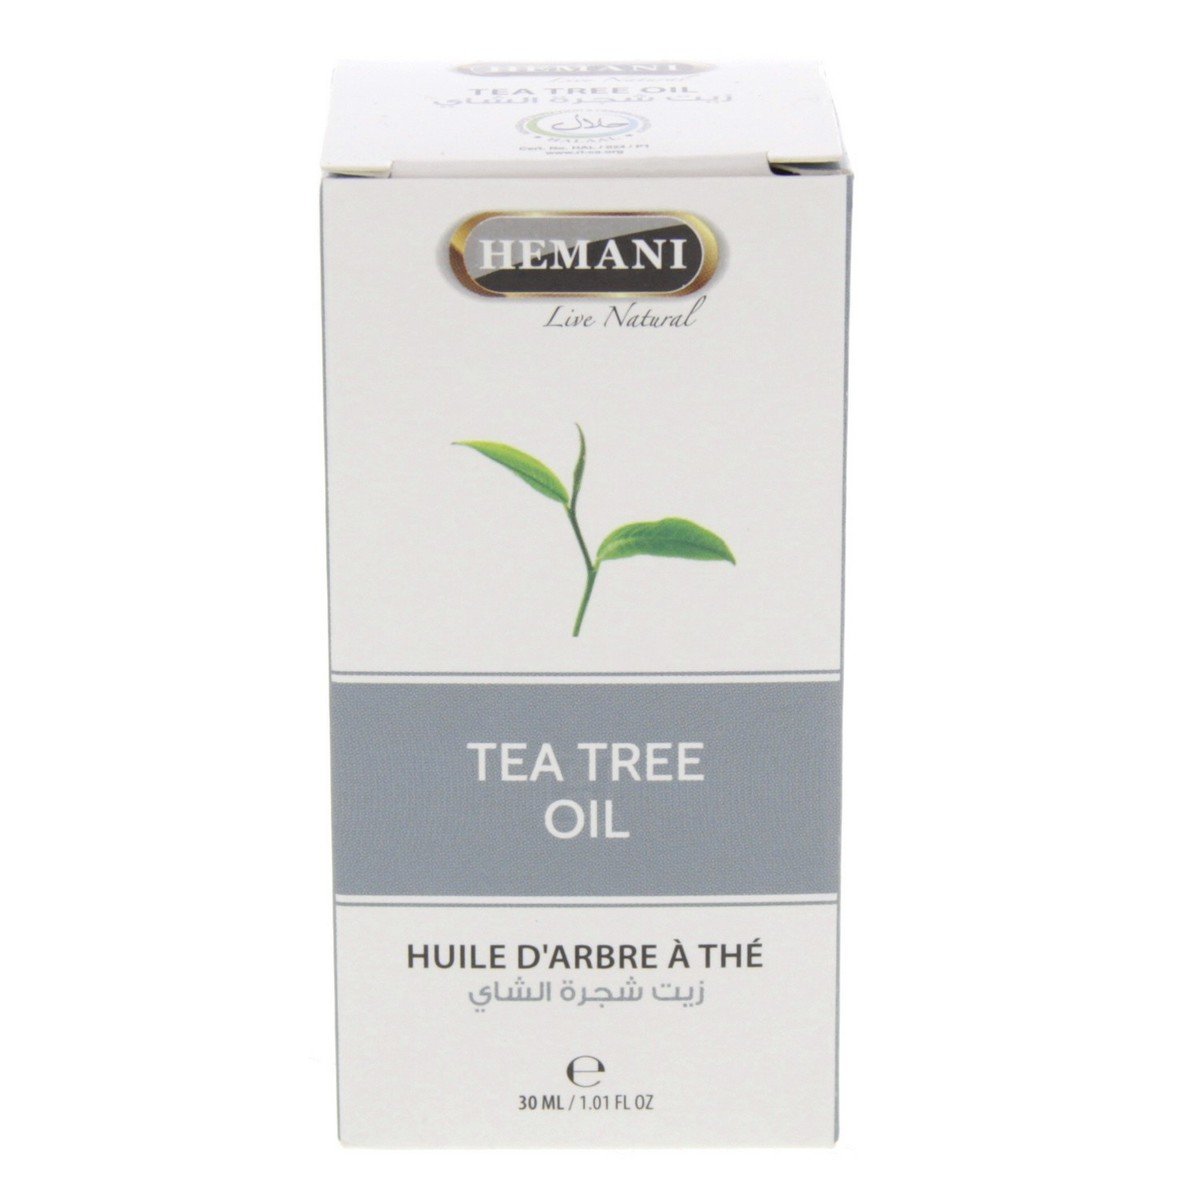 Hemani Tea Tree Oil 30 ml